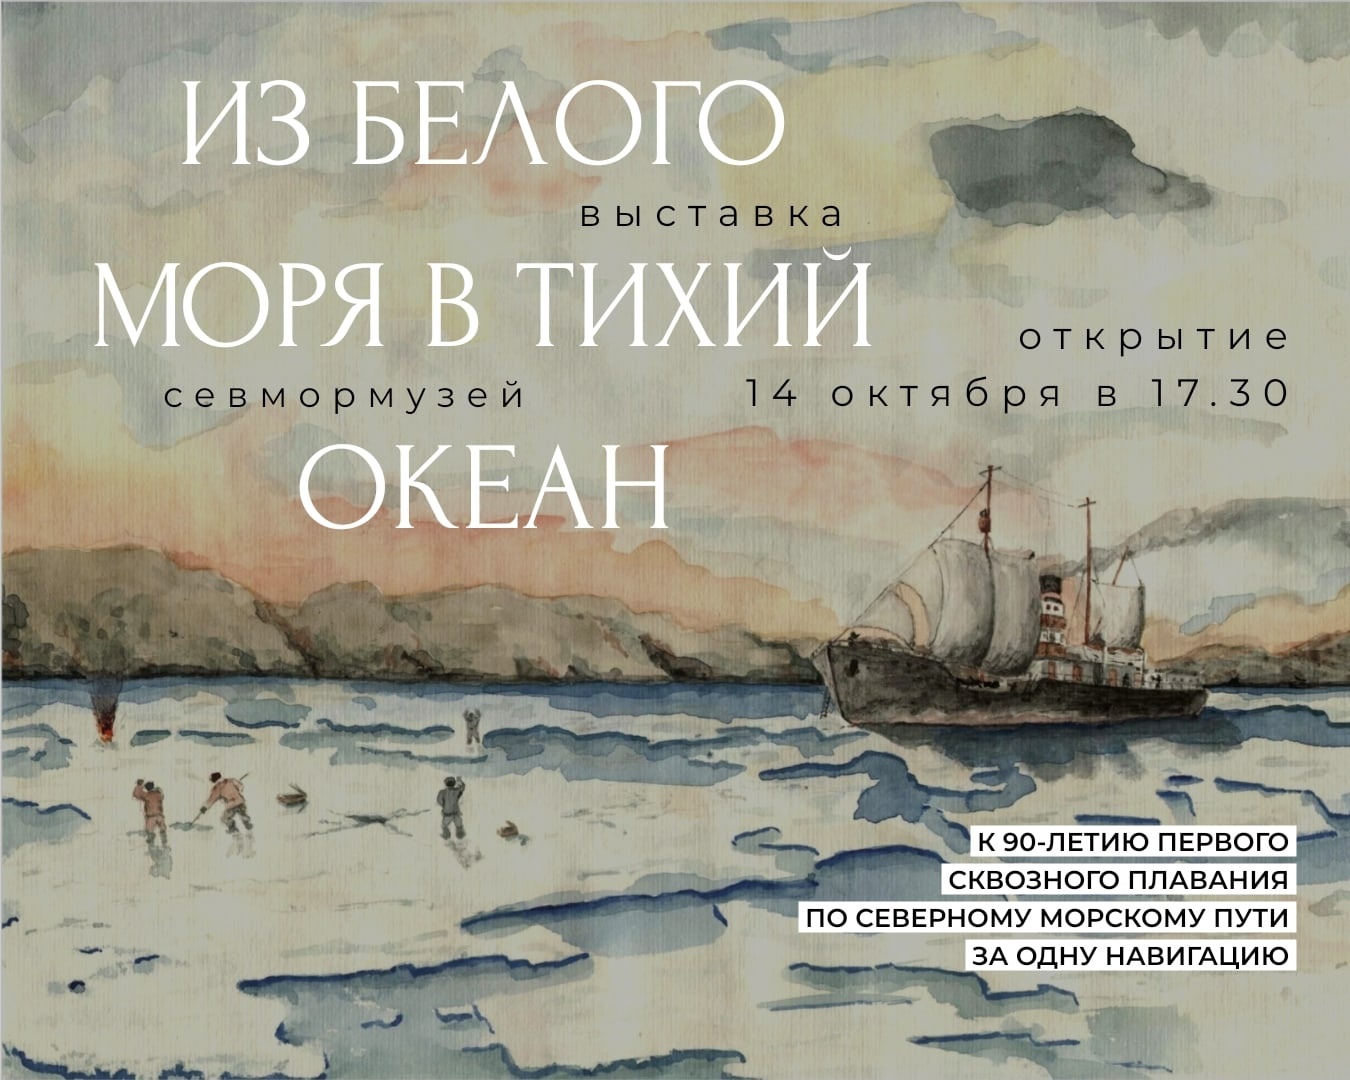 Выставка об освоении Северного морского пути открывается в Архангельске